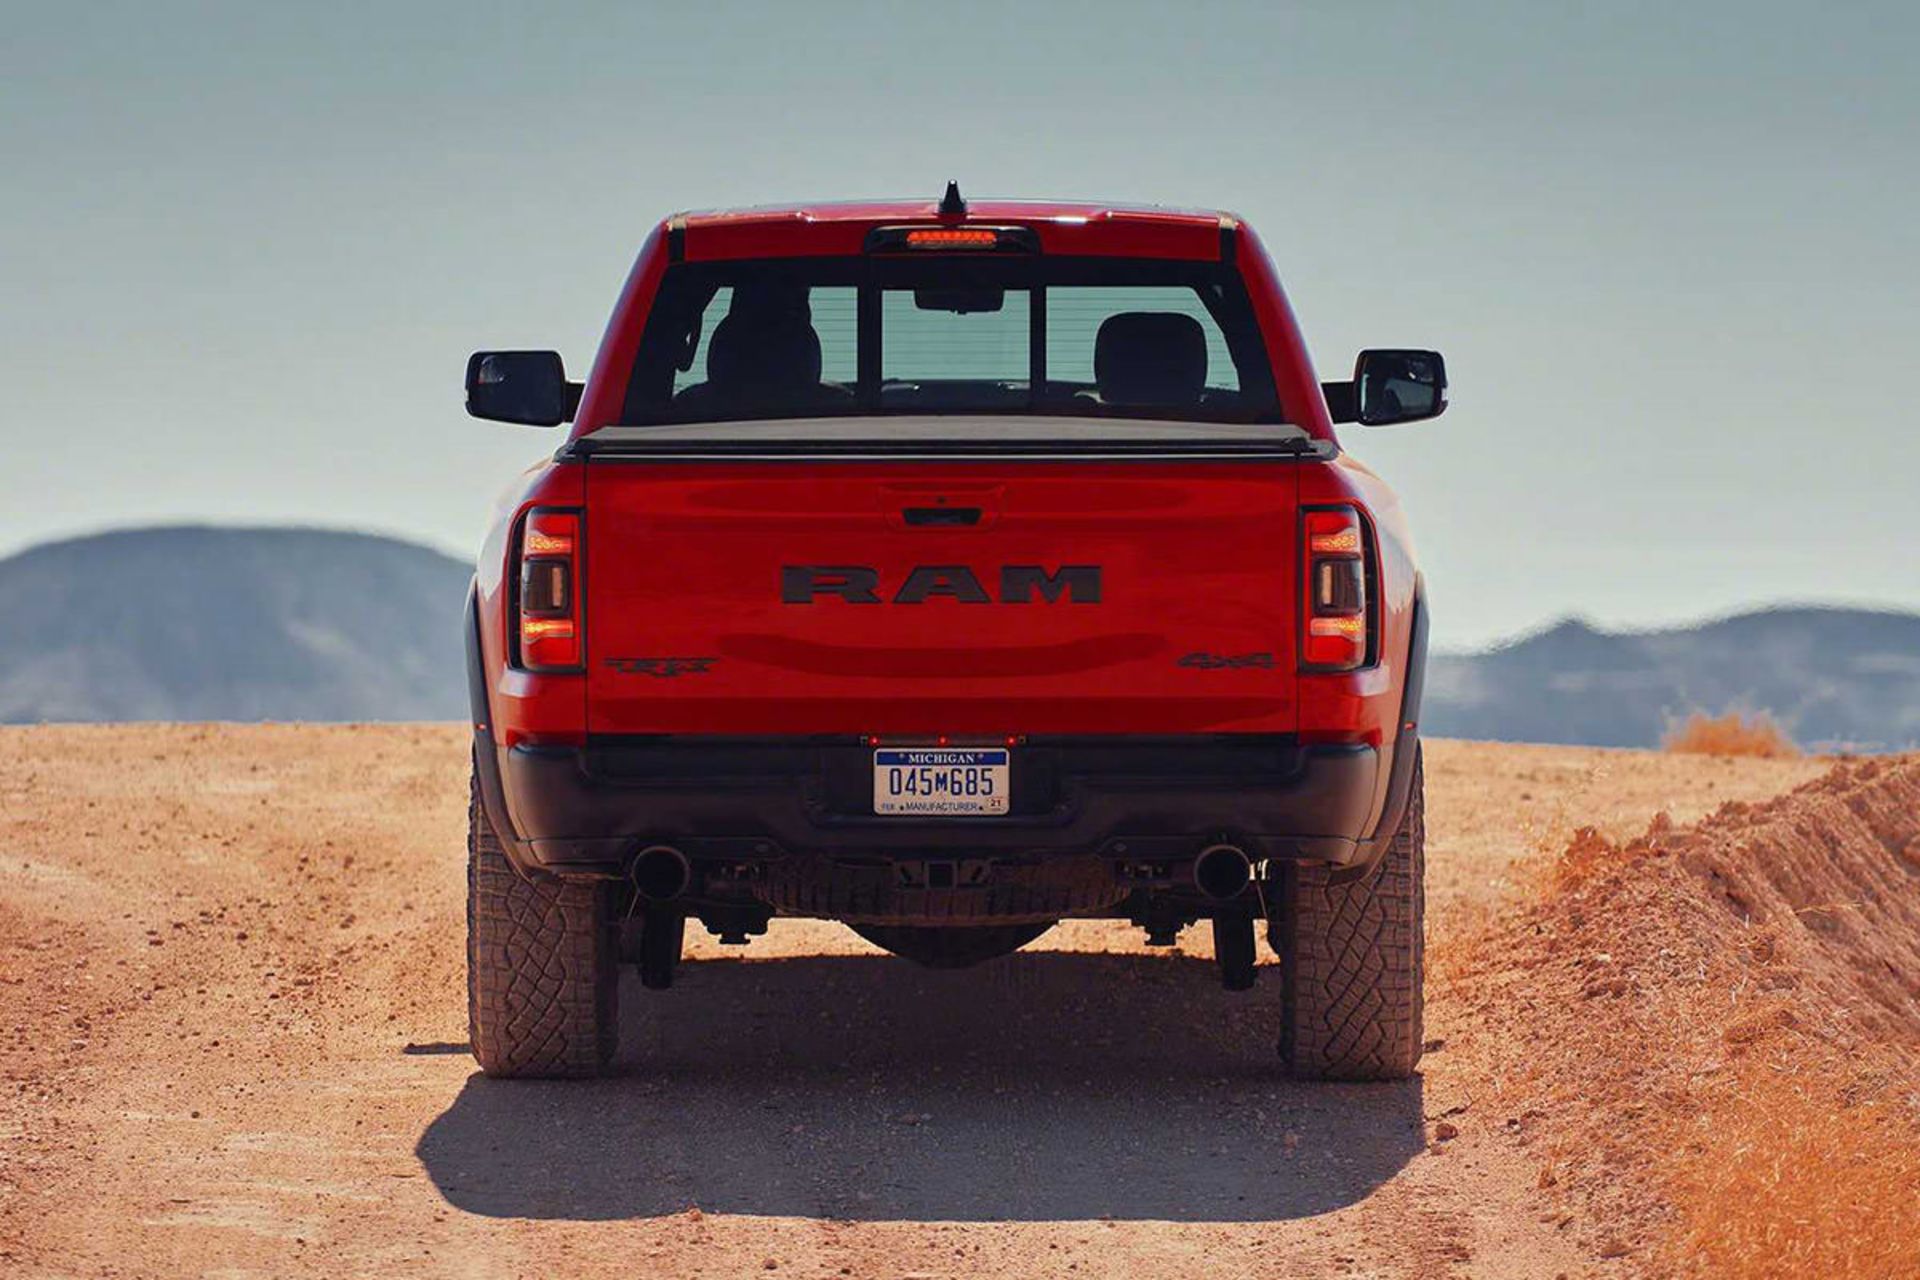 نمای عقب وانت پیکاپ رم TRX با نام هنسی ماموت / Hennessey Mammoth Ram TRX 6x6 قرمز رنگ در جاده آفرود